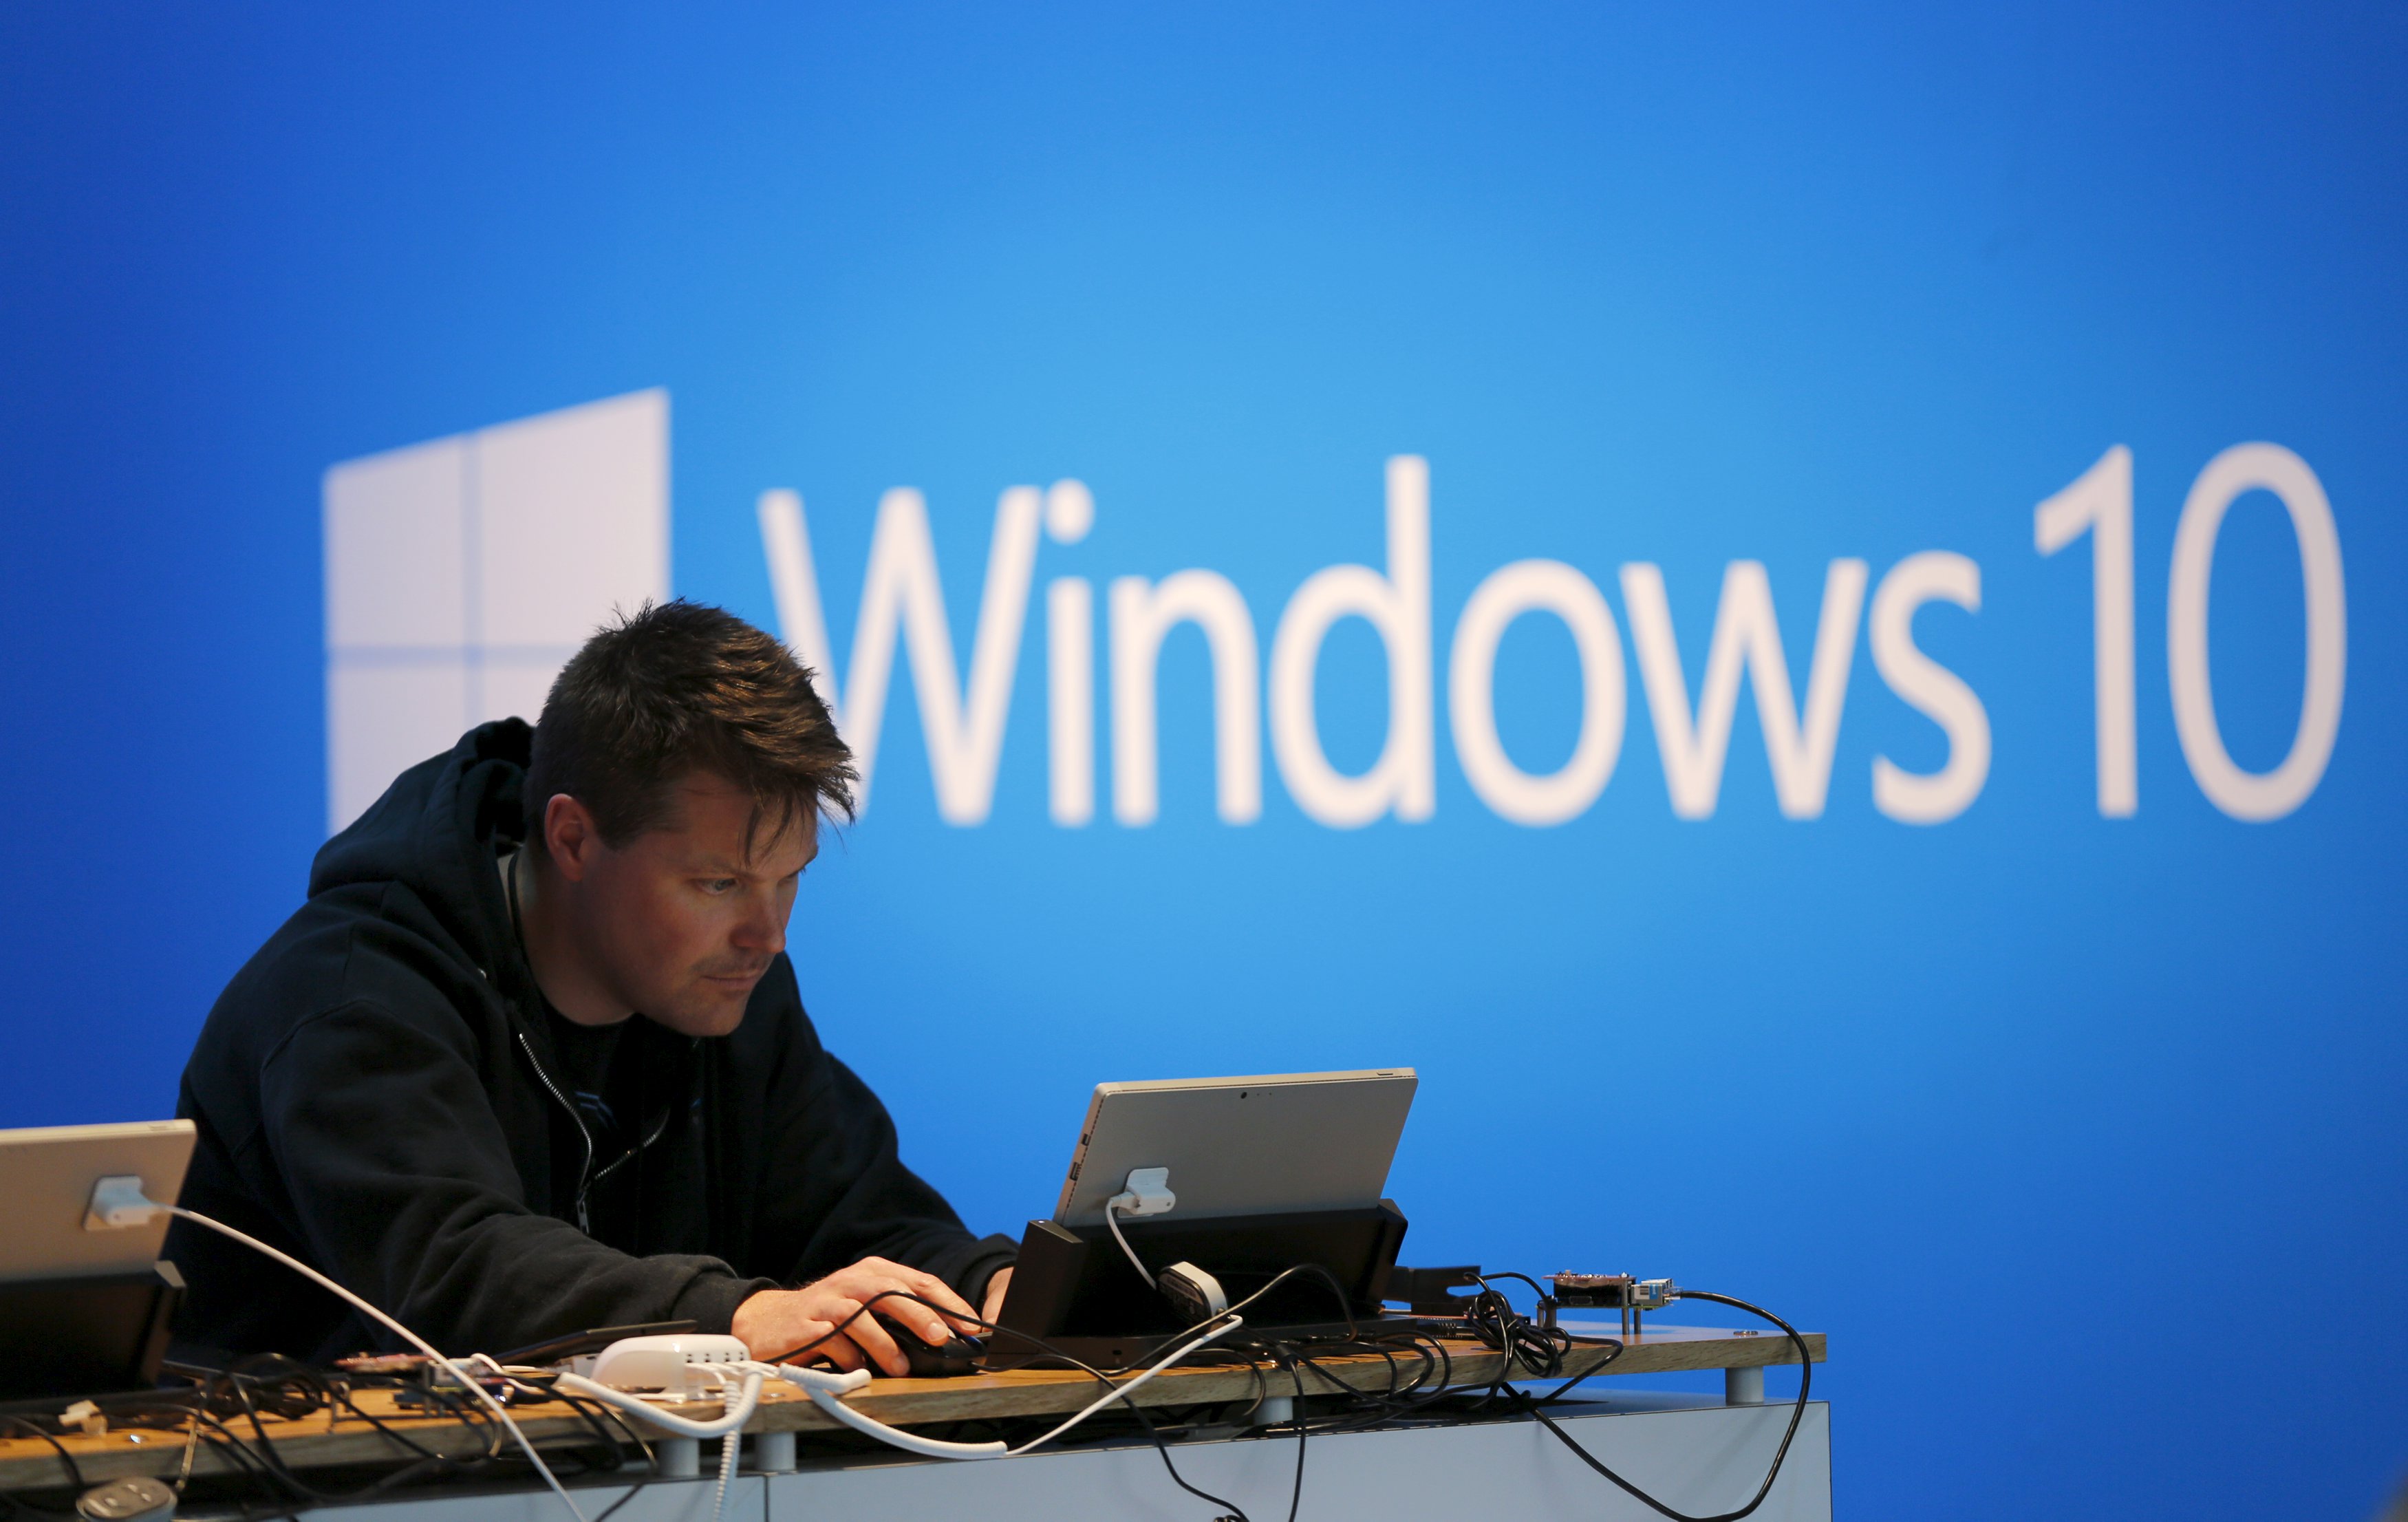 Σημαντική αναβάθμιση των Windows 10 στα μέσα Οκτωβρίου